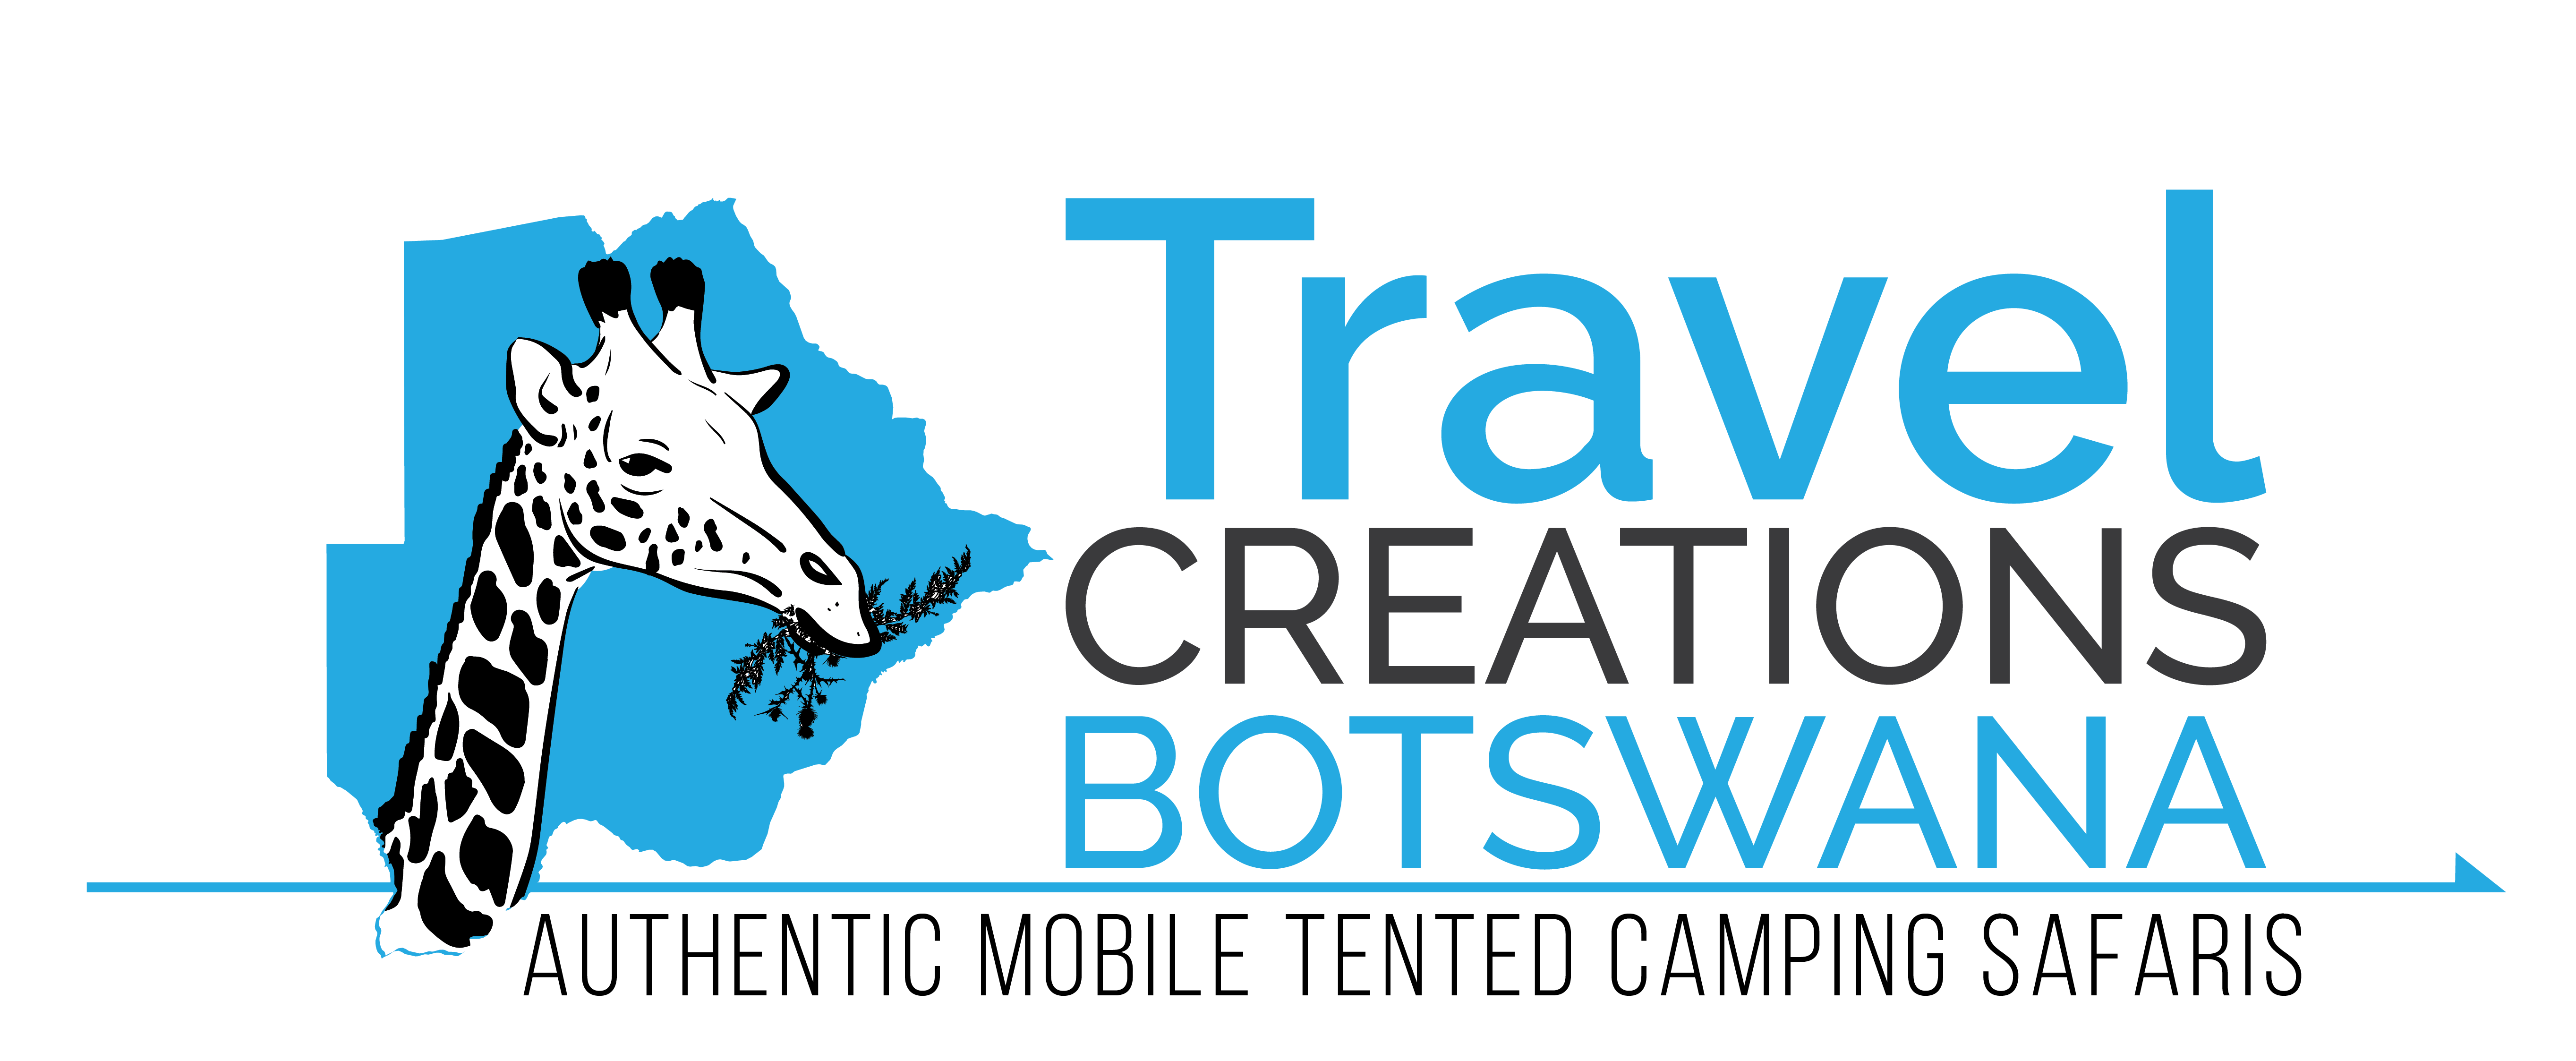 Travel Creations Botswana